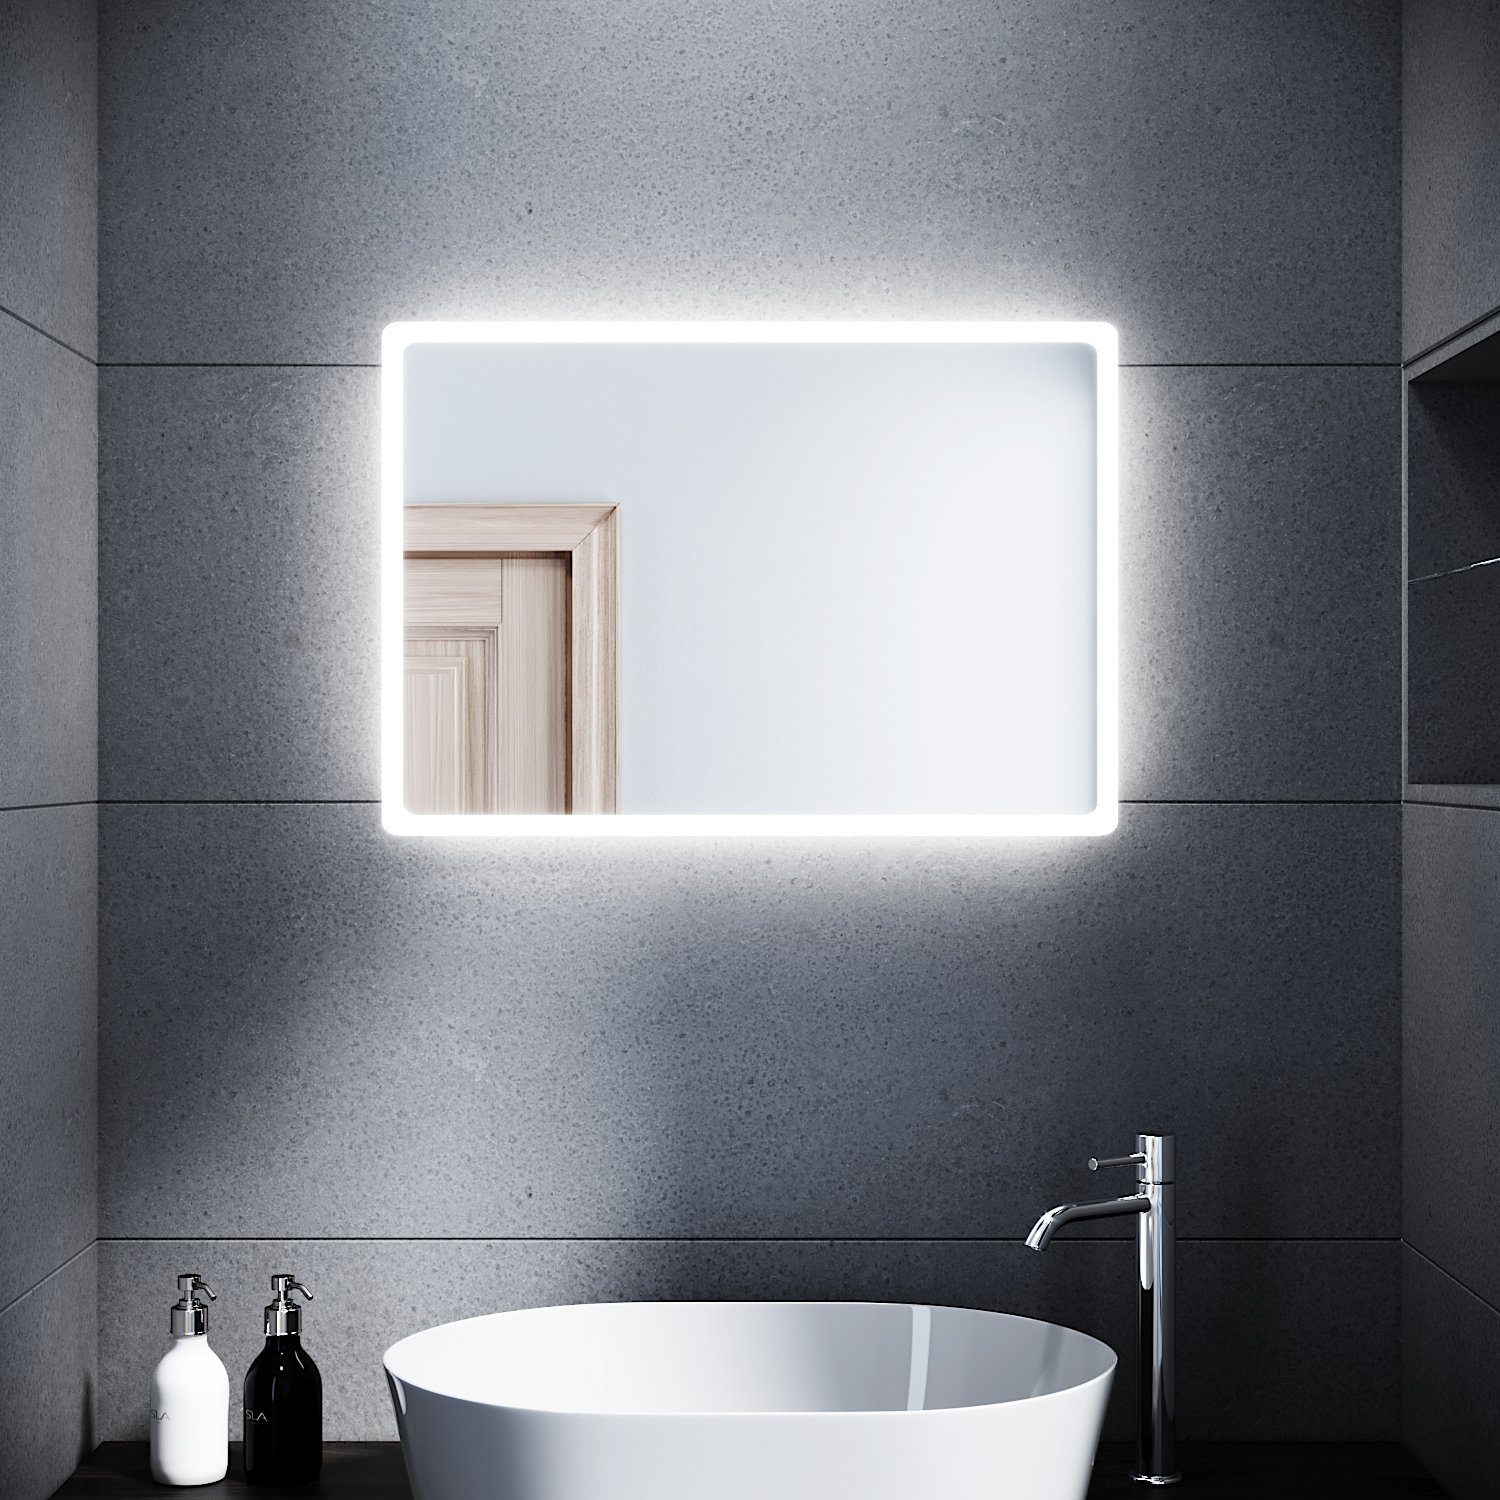 SONNI Badspiegel »Badspiegel mit Beleuchtung 80 x 60 cm Wandspiegel Spiegel  mit Beleuchtung Badezimmerspiegel kaltweiß IP44 Badezimmer Bad Spiegel«  online kaufen | OTTO